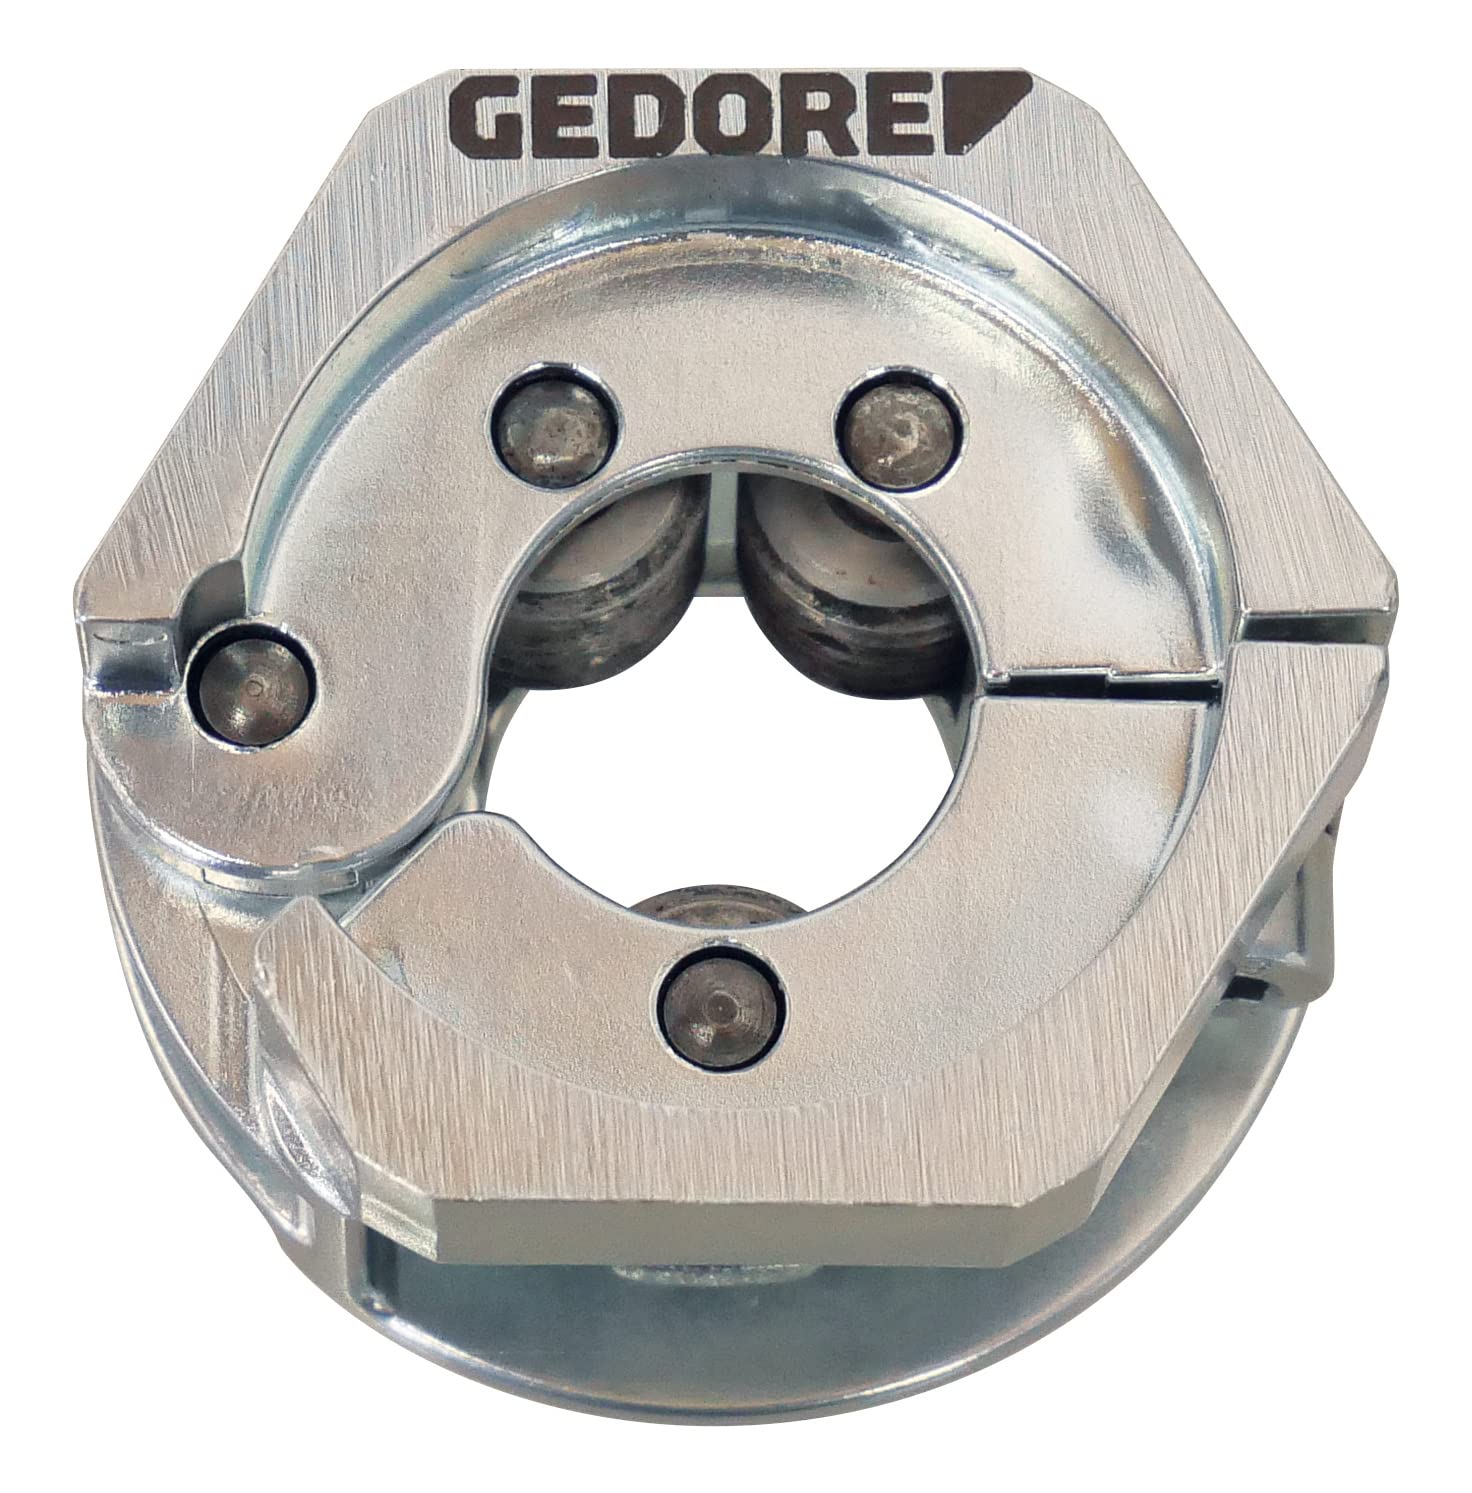 GEDORE Automotive Gewinderückform-Werkzeug für Radbolzen (M12x1,5), universell, SW36 6-Kant Antrieb, Spezialwerkzeug, KL-0173-612 von GEDORE